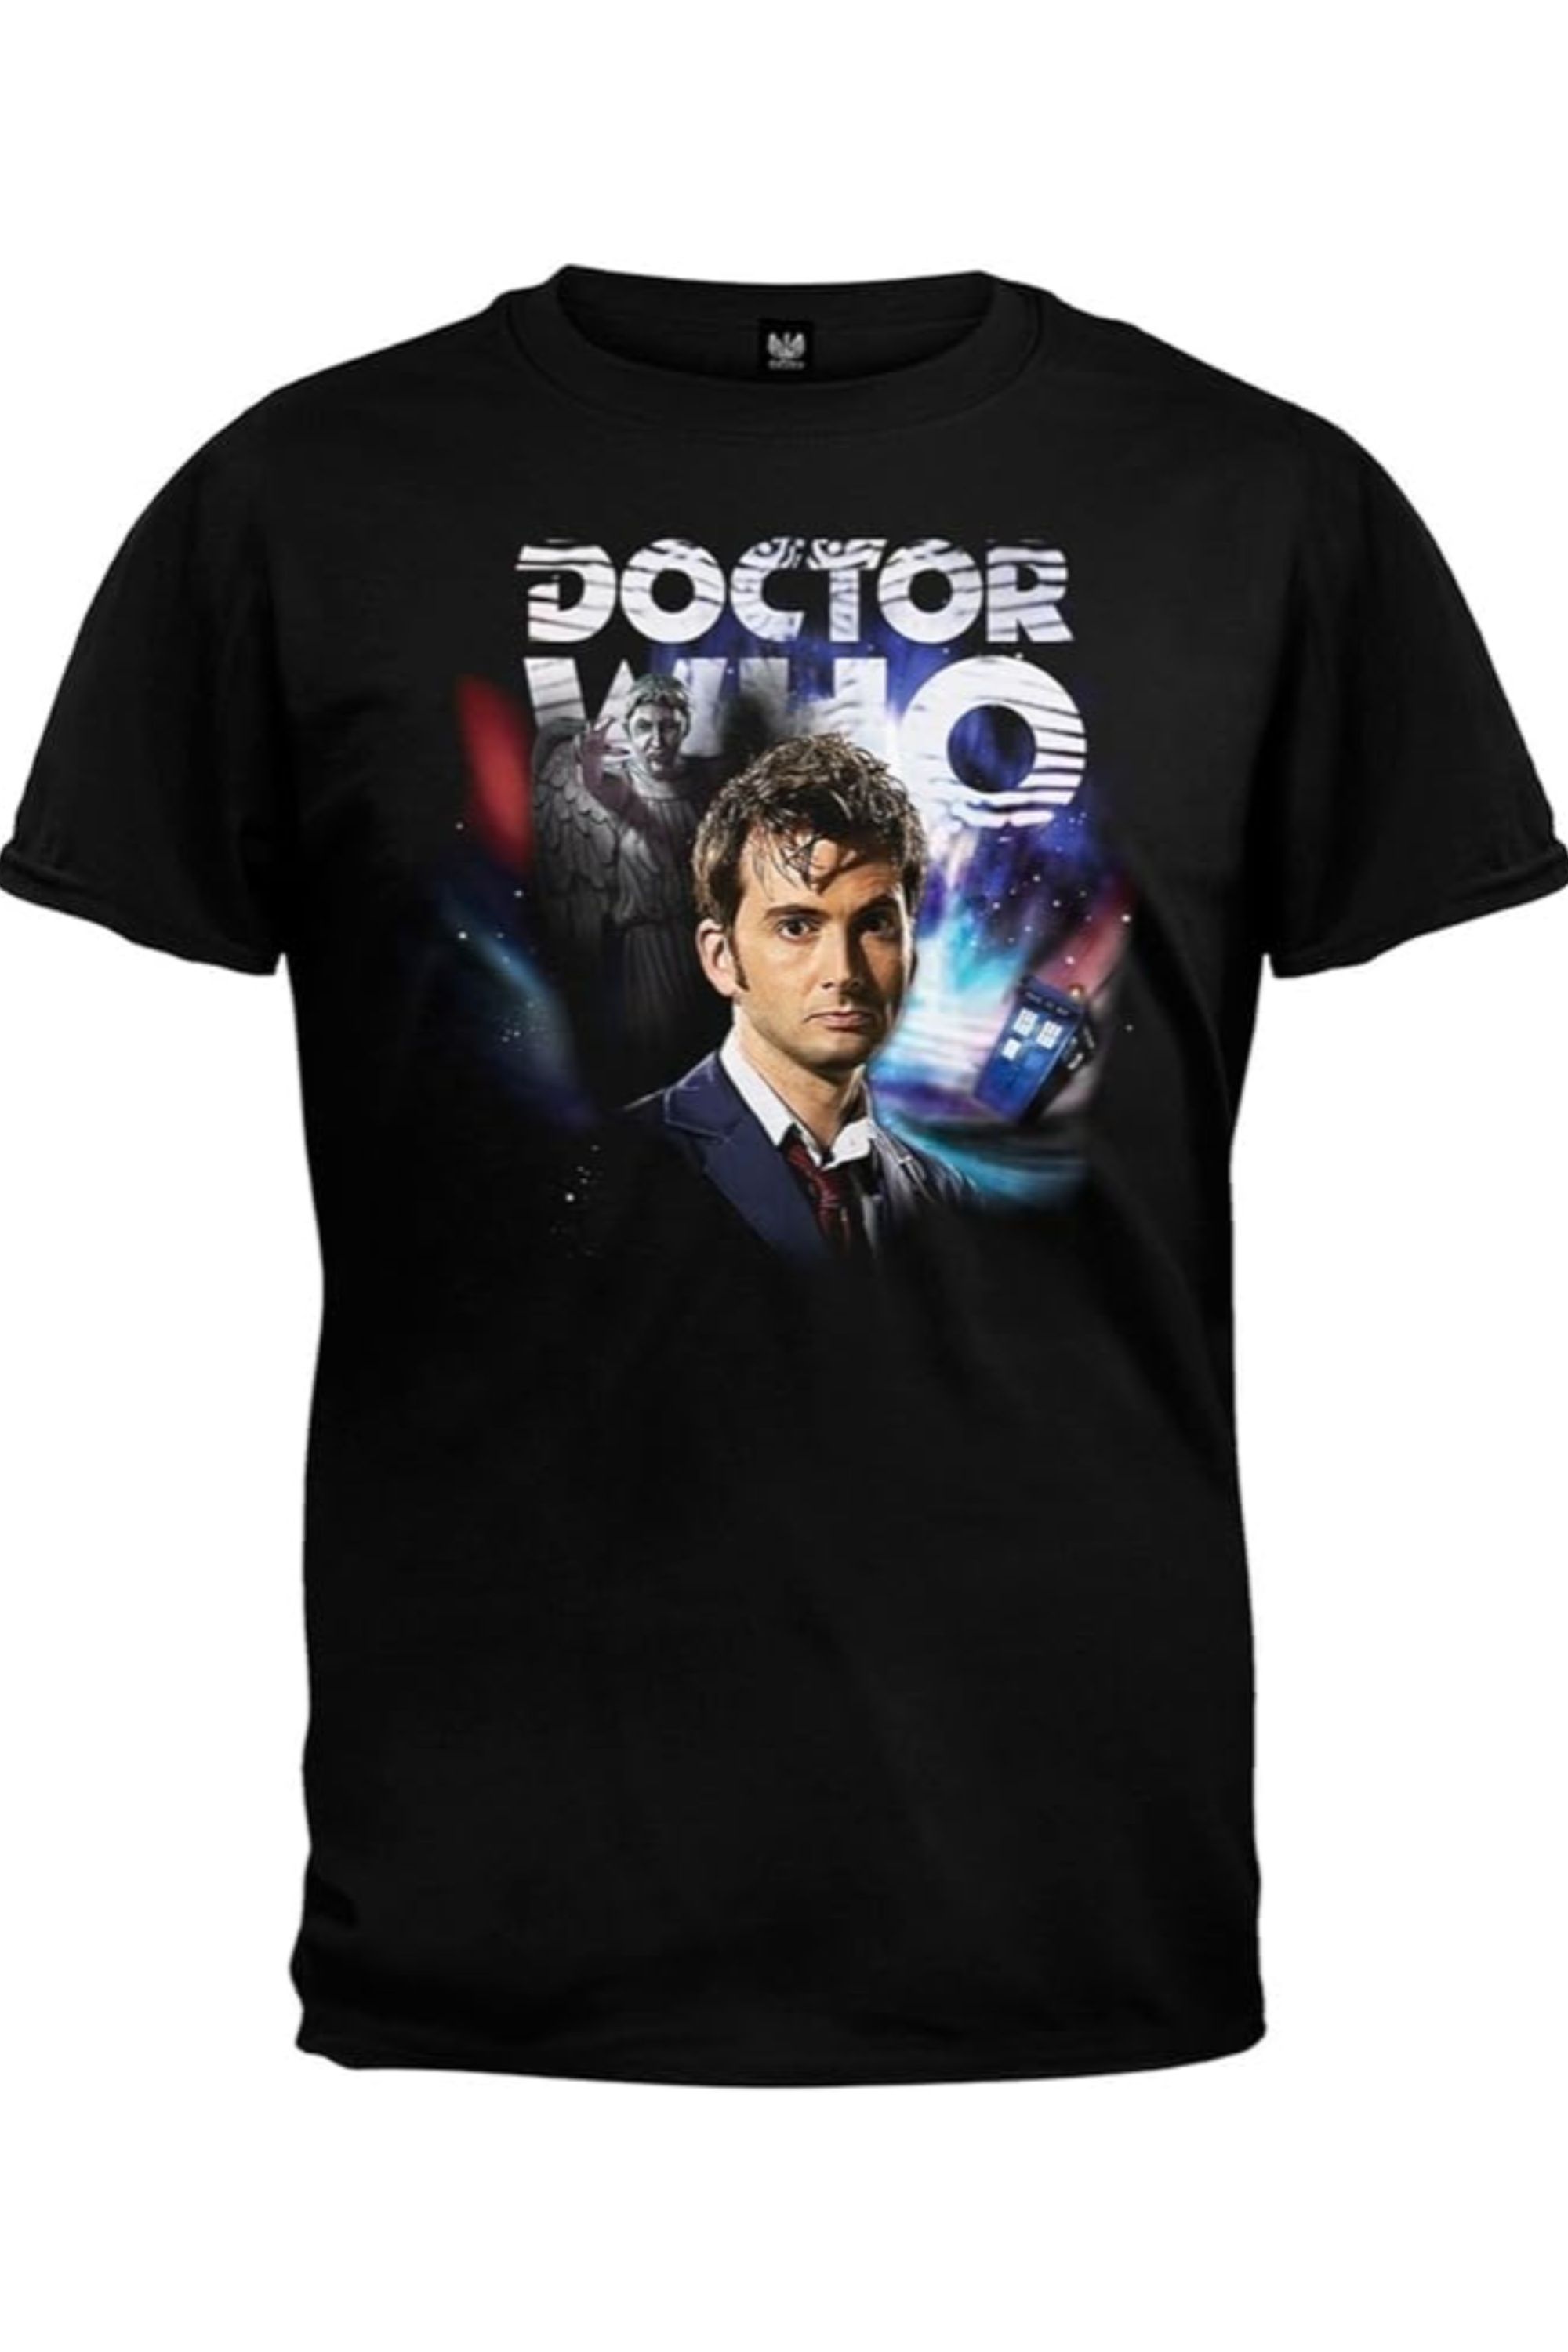 تی شرت Ripple Junction Doctor Who David Tennant